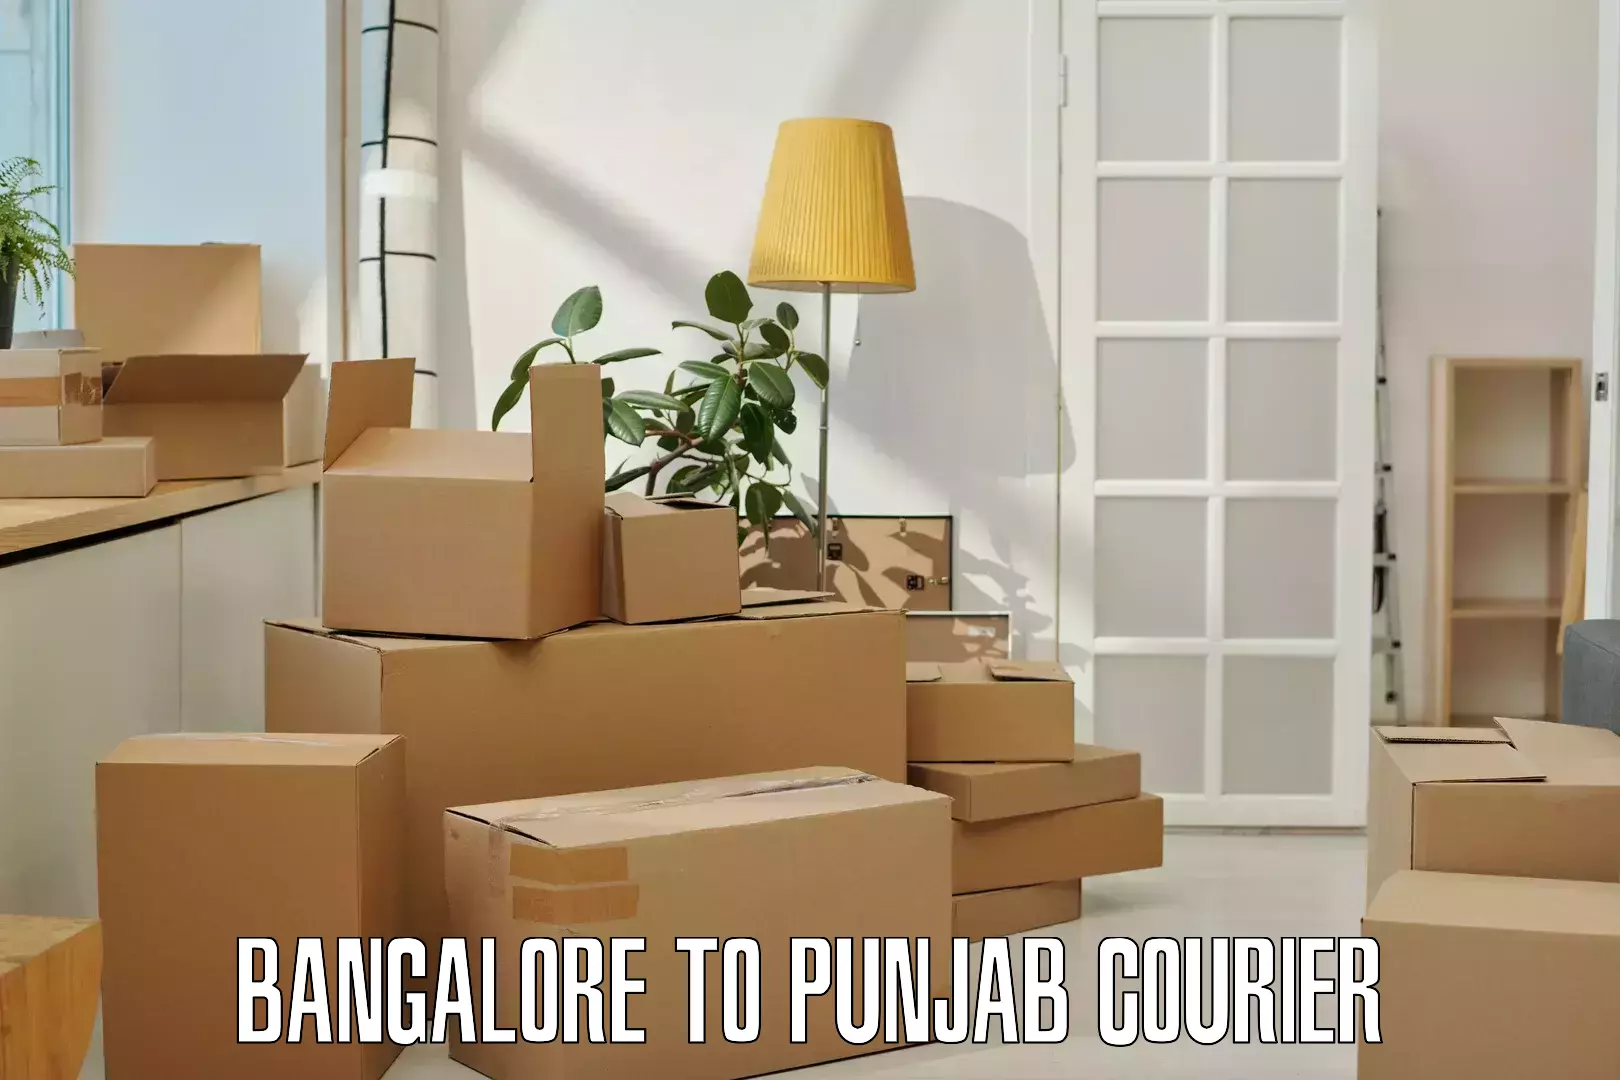 Courier dispatch services Bangalore to Punjab